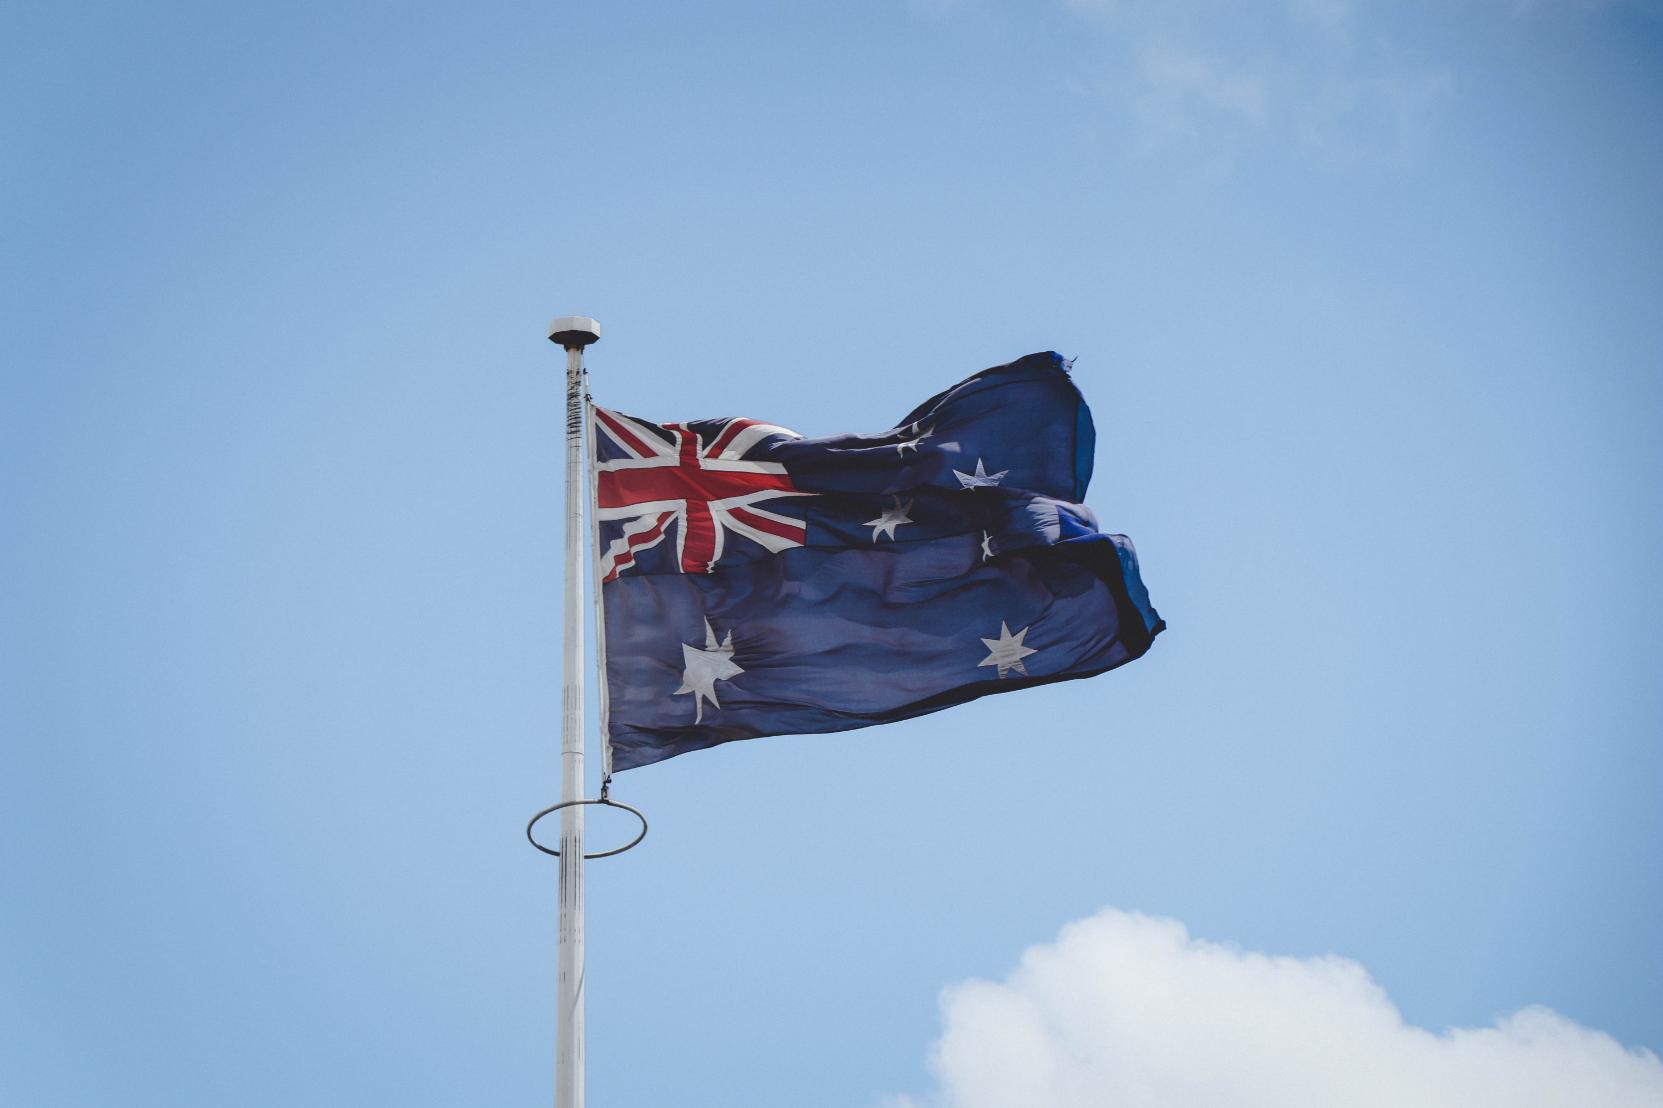 The Australian flag on a pole.